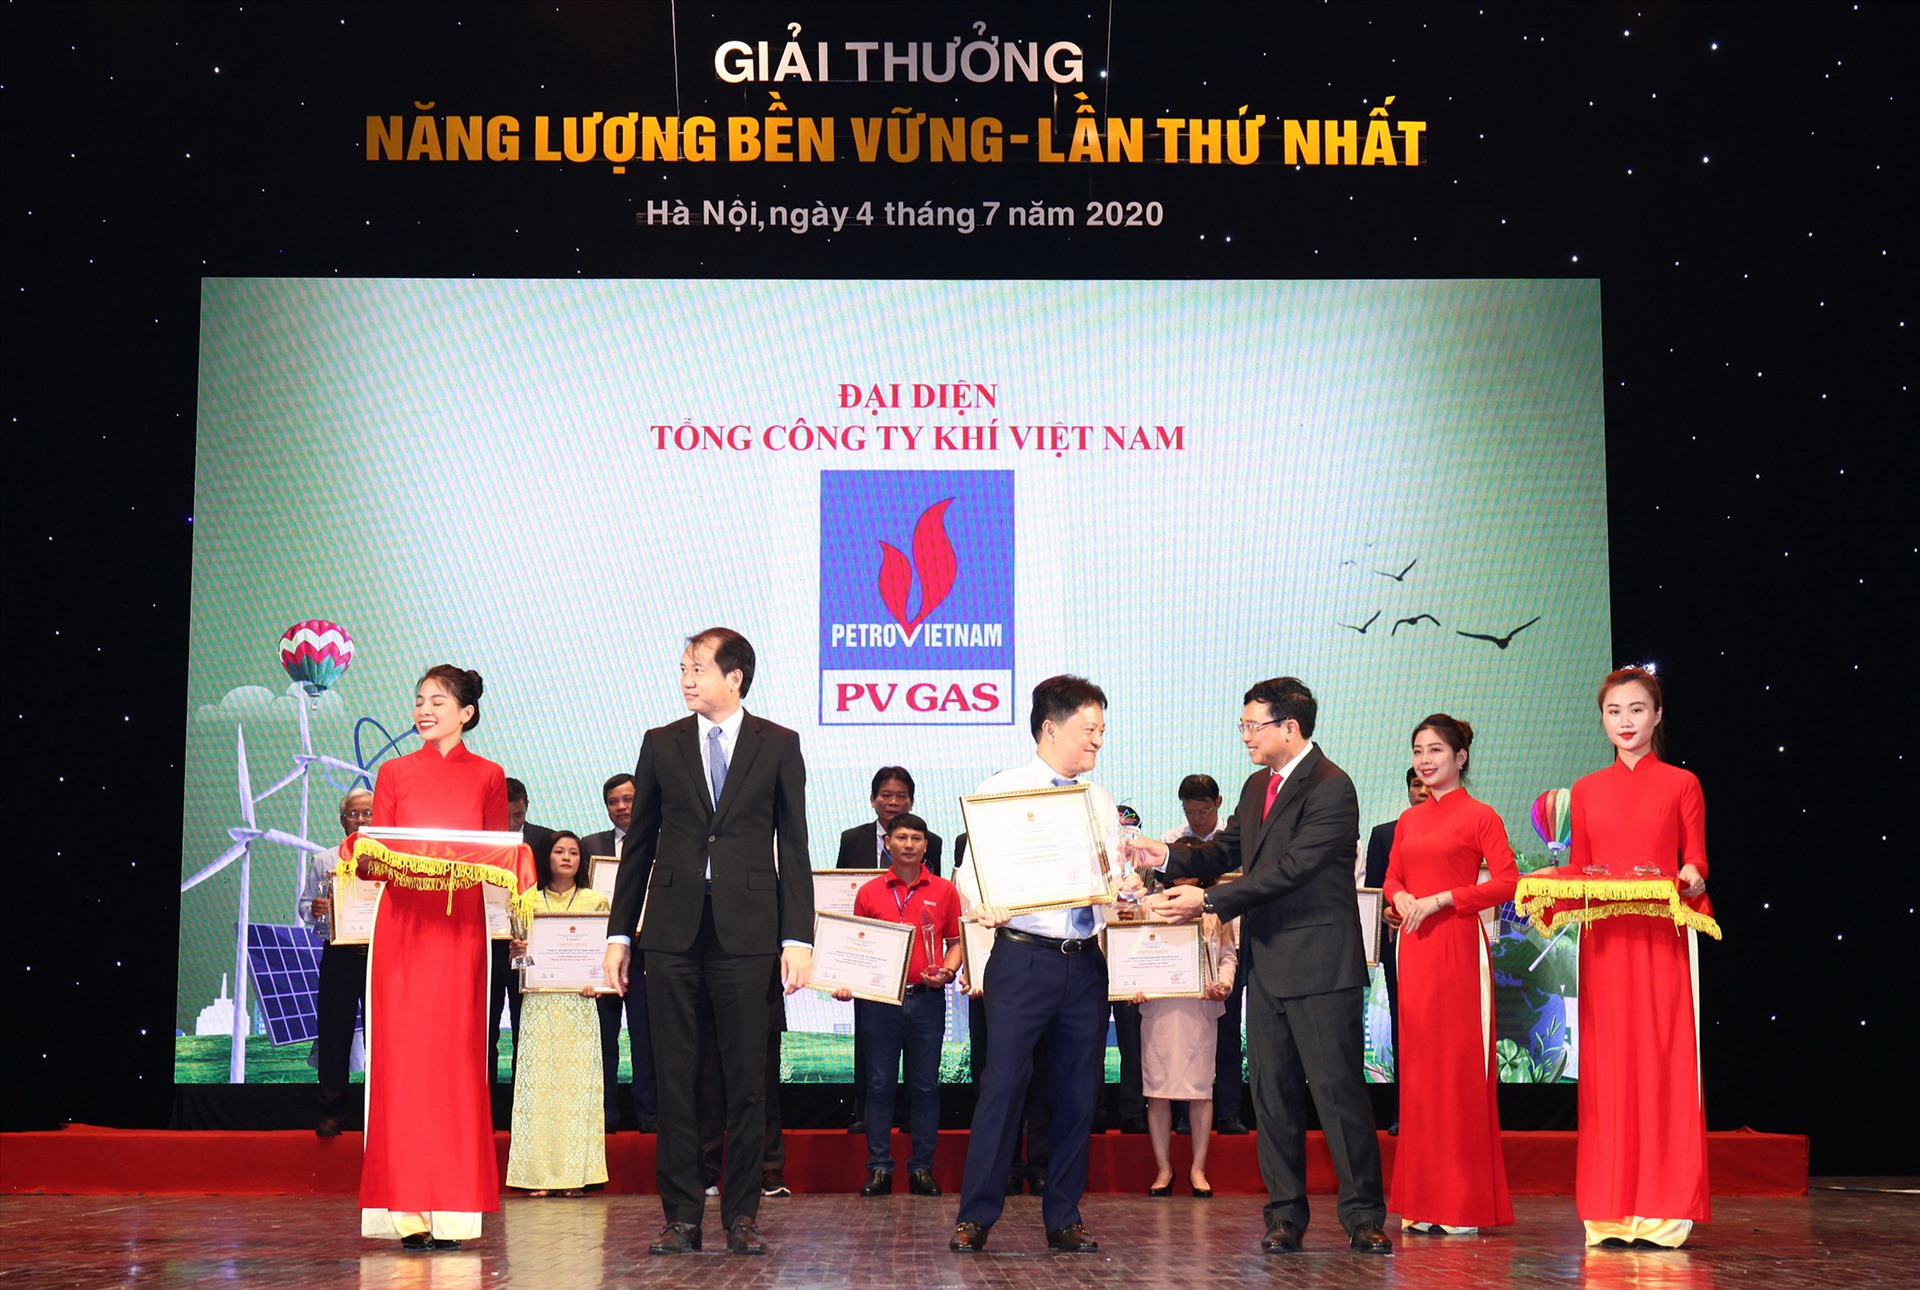 PTGĐ PV GAS Hoàng Văn Quang nhận Bằng chứng nhận và Cúp: PV GAS – Giải thưởng Năng lượng bền vững